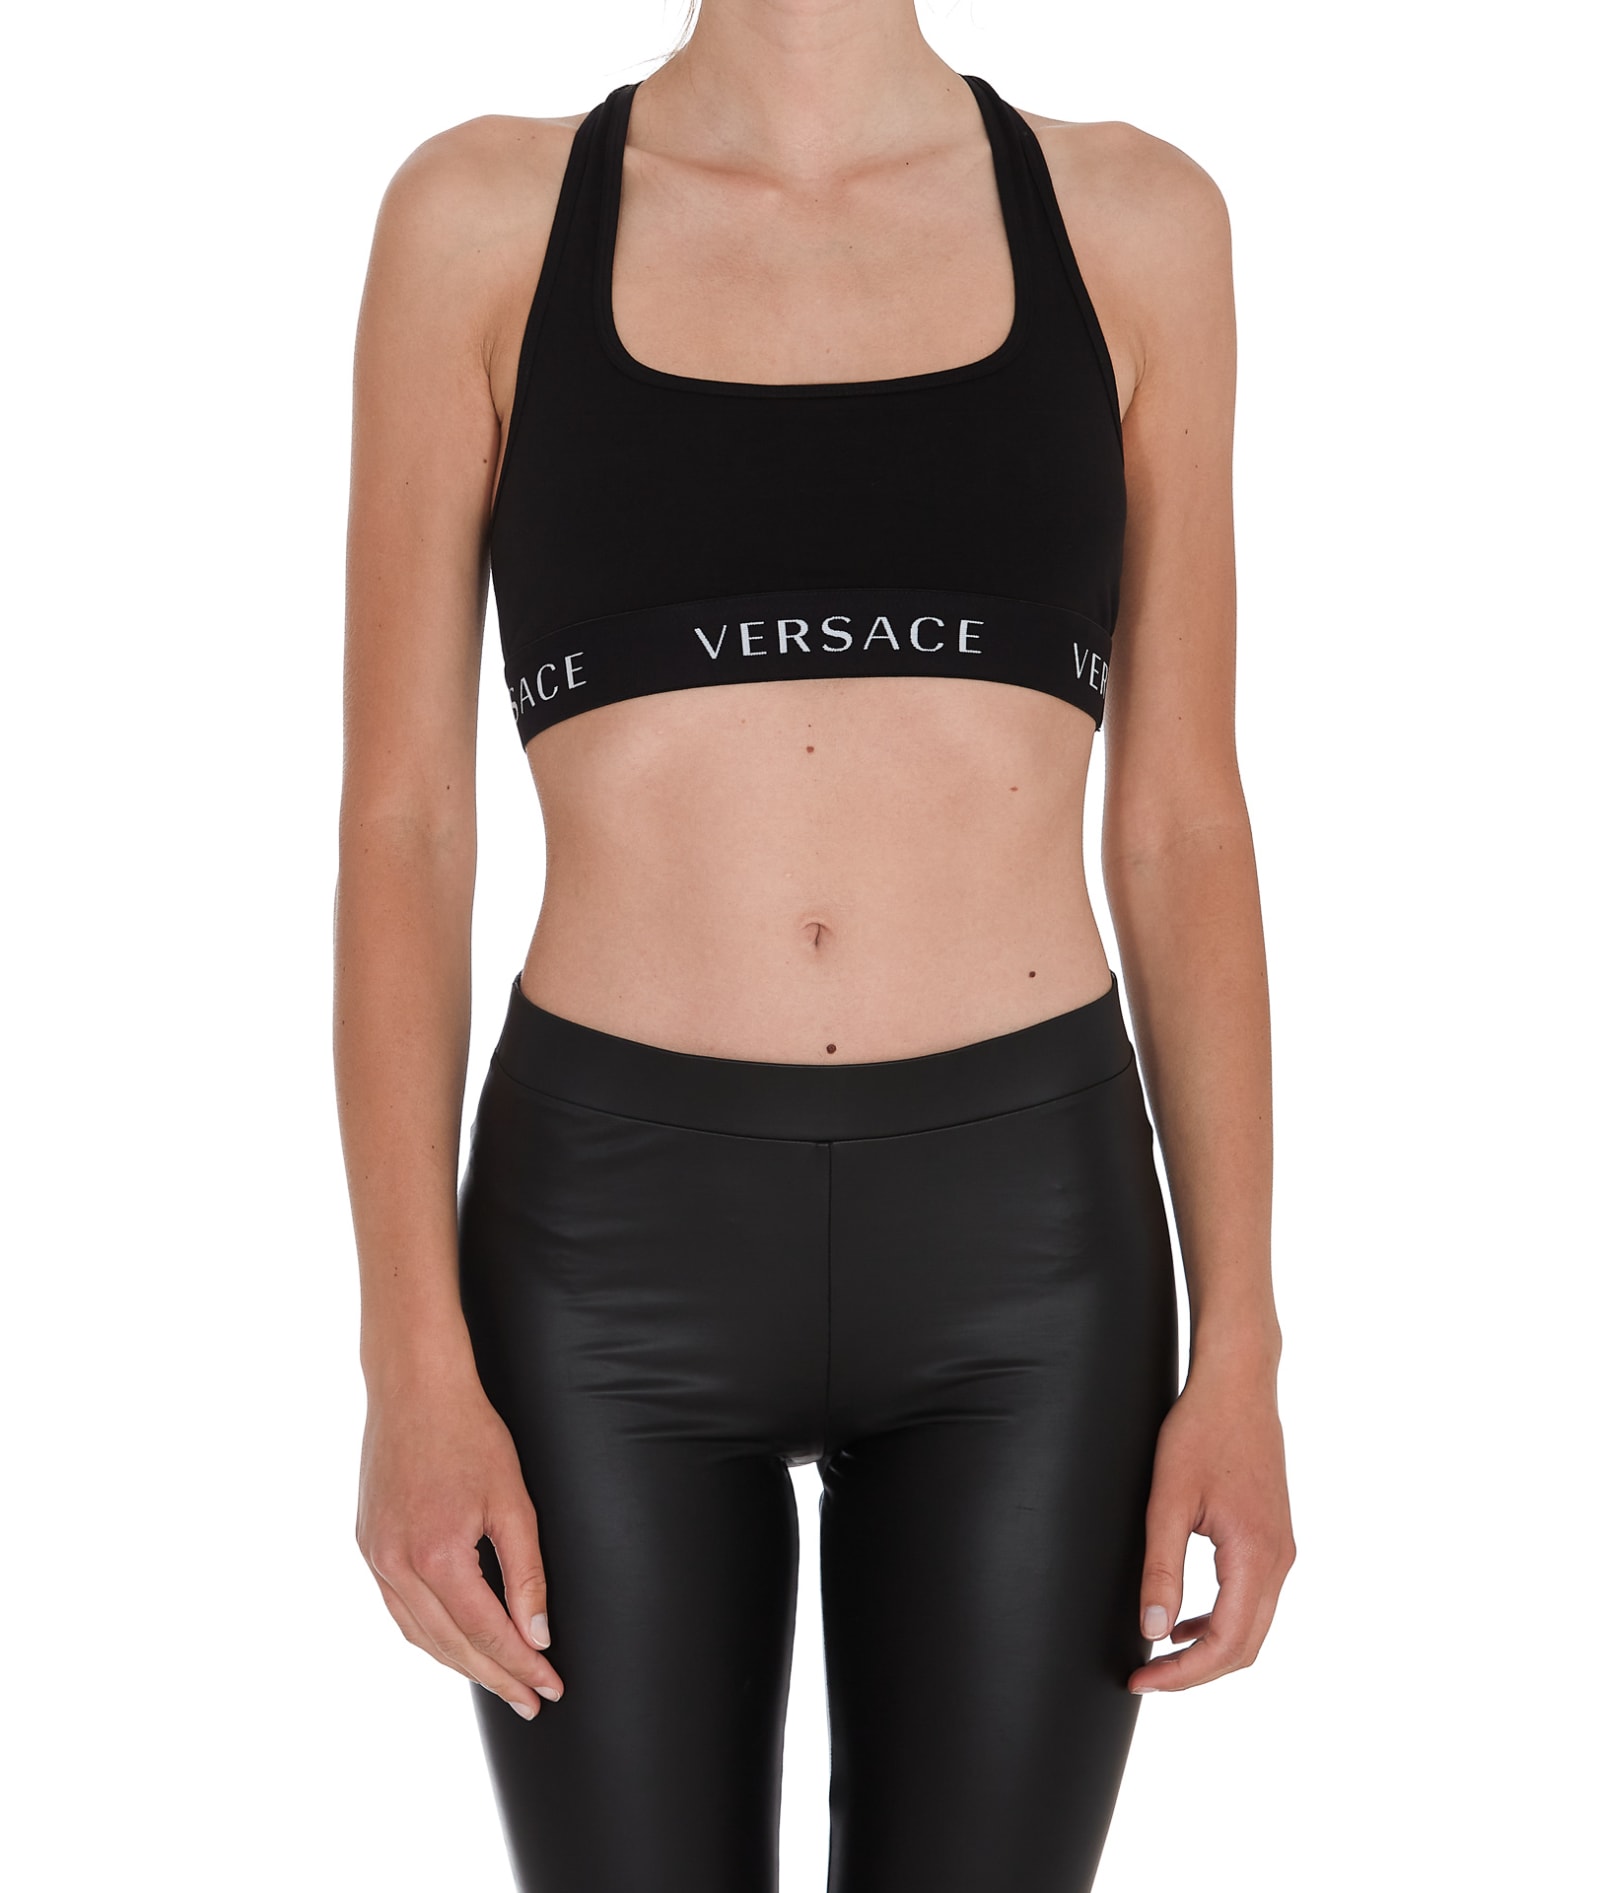 Versace Logo Underwear